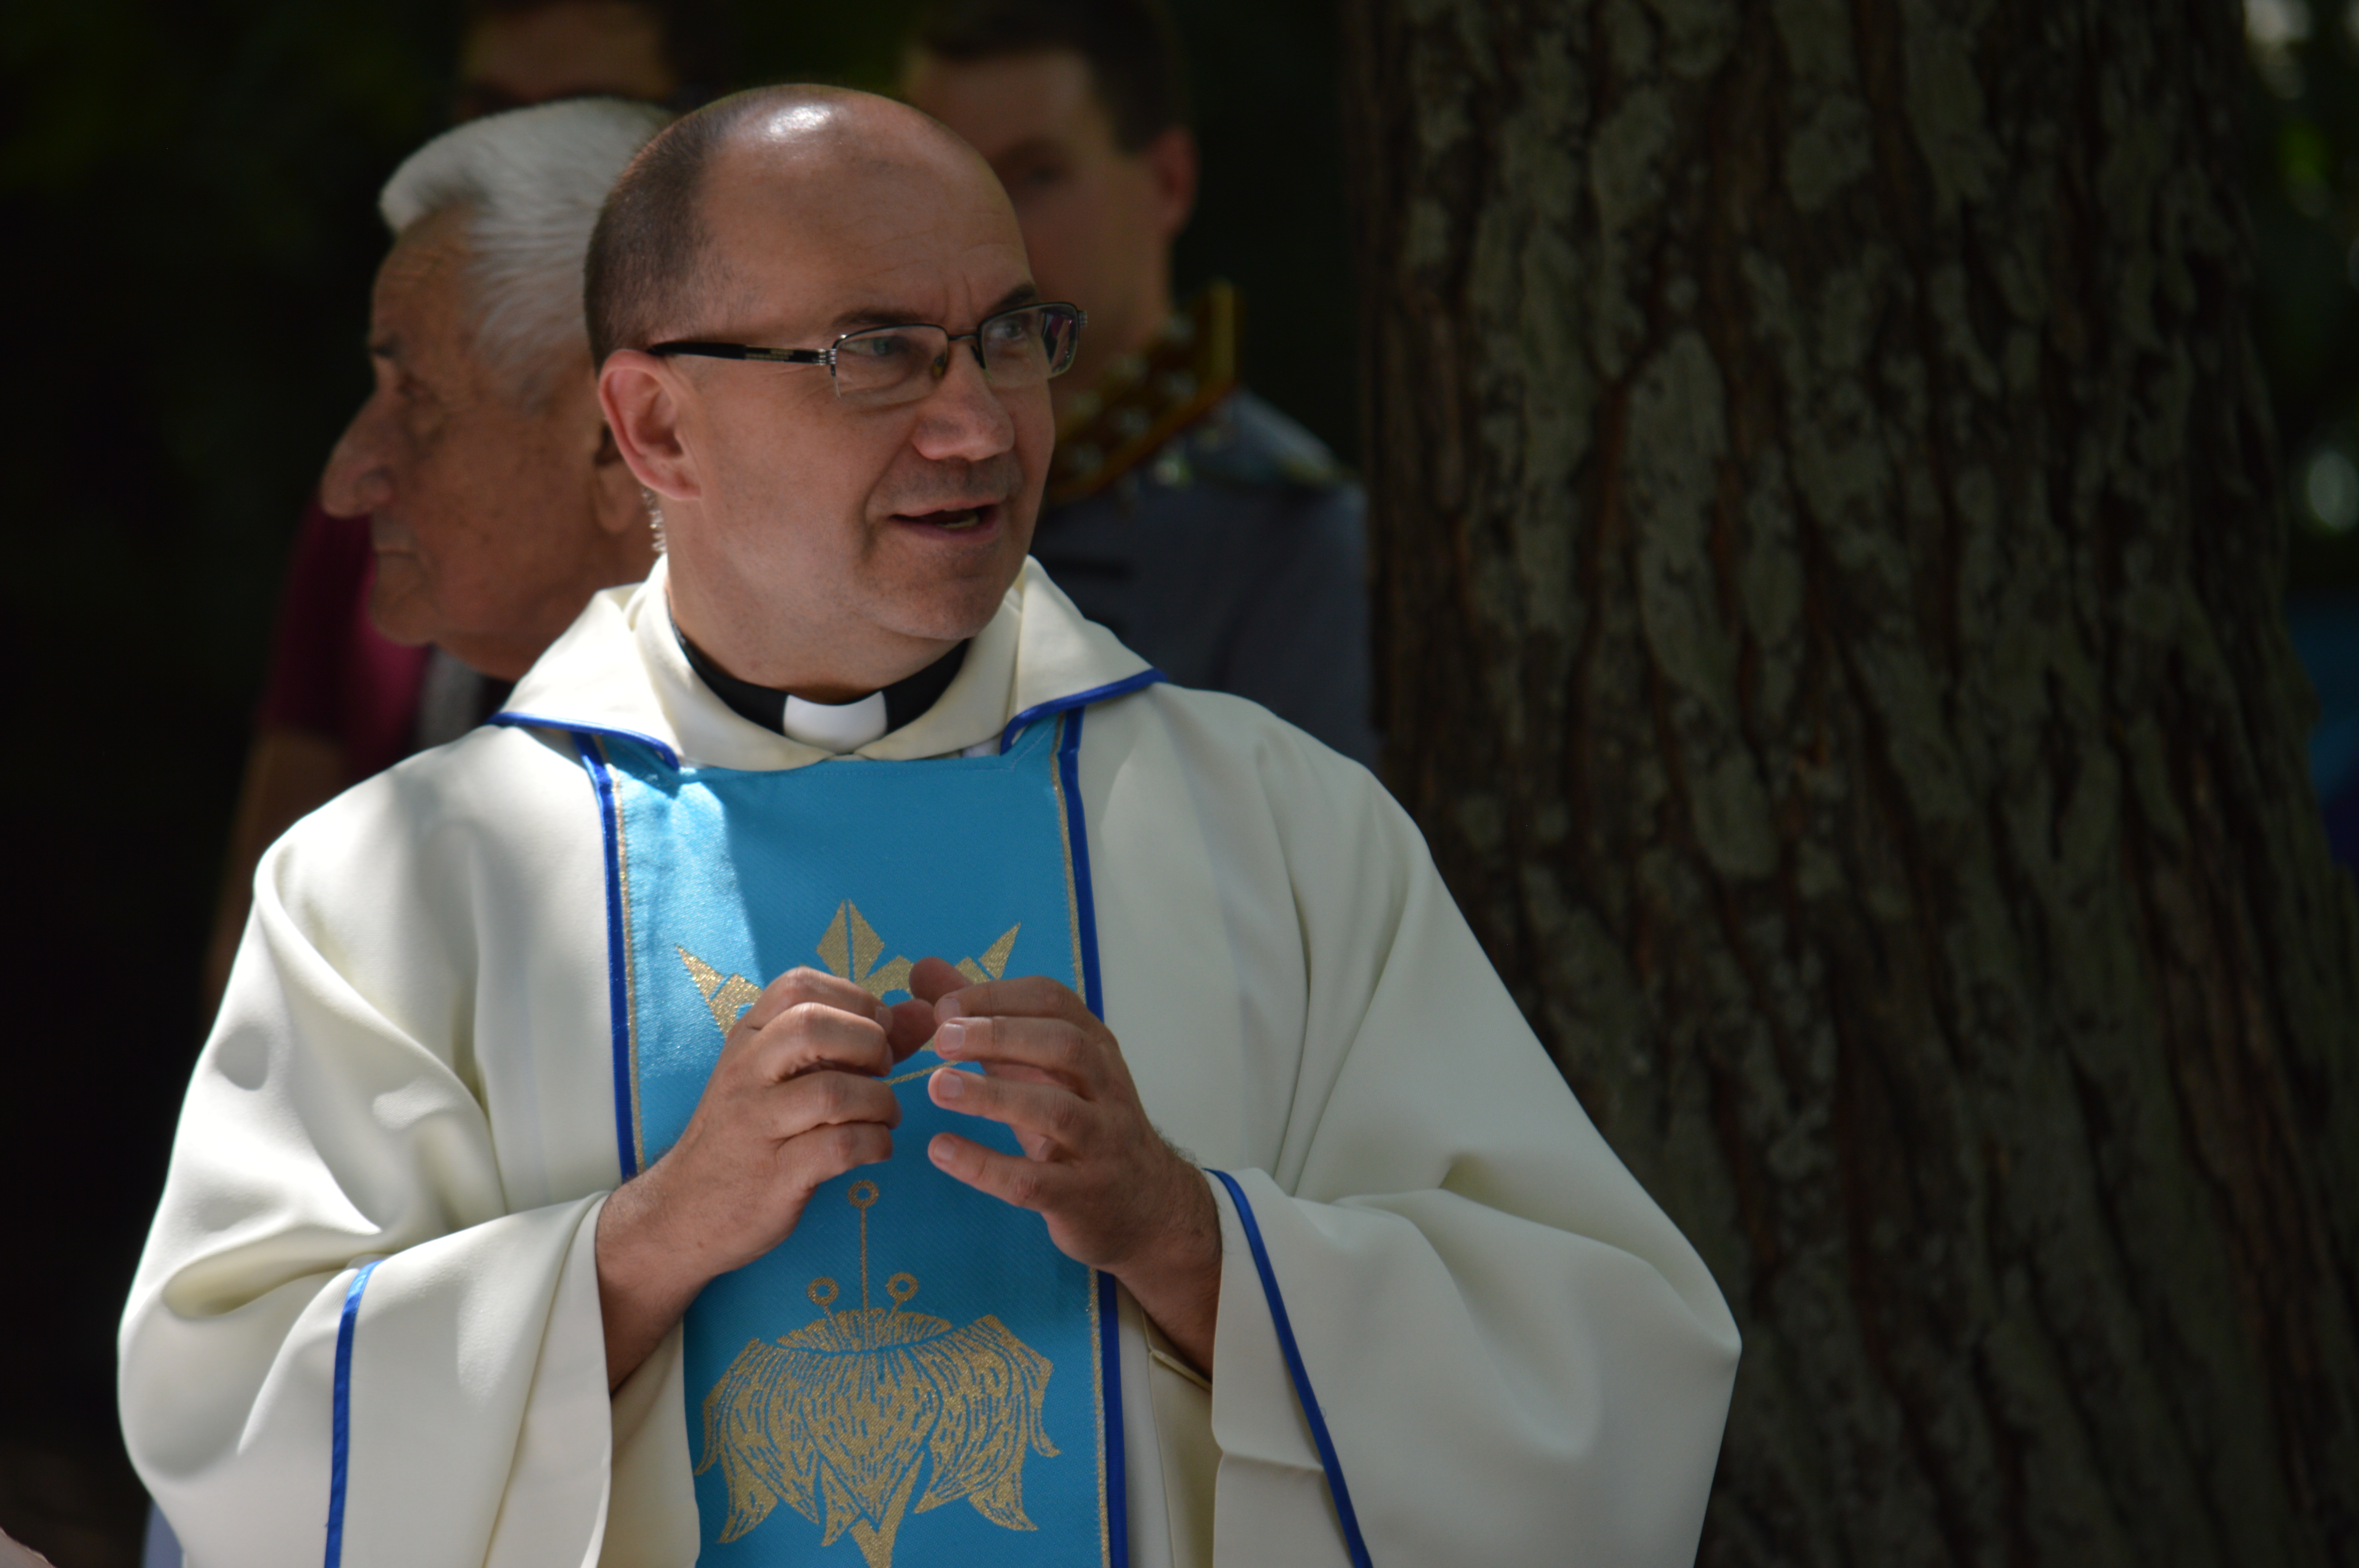 Püspökszentelés augusztus 24-én Vácott!